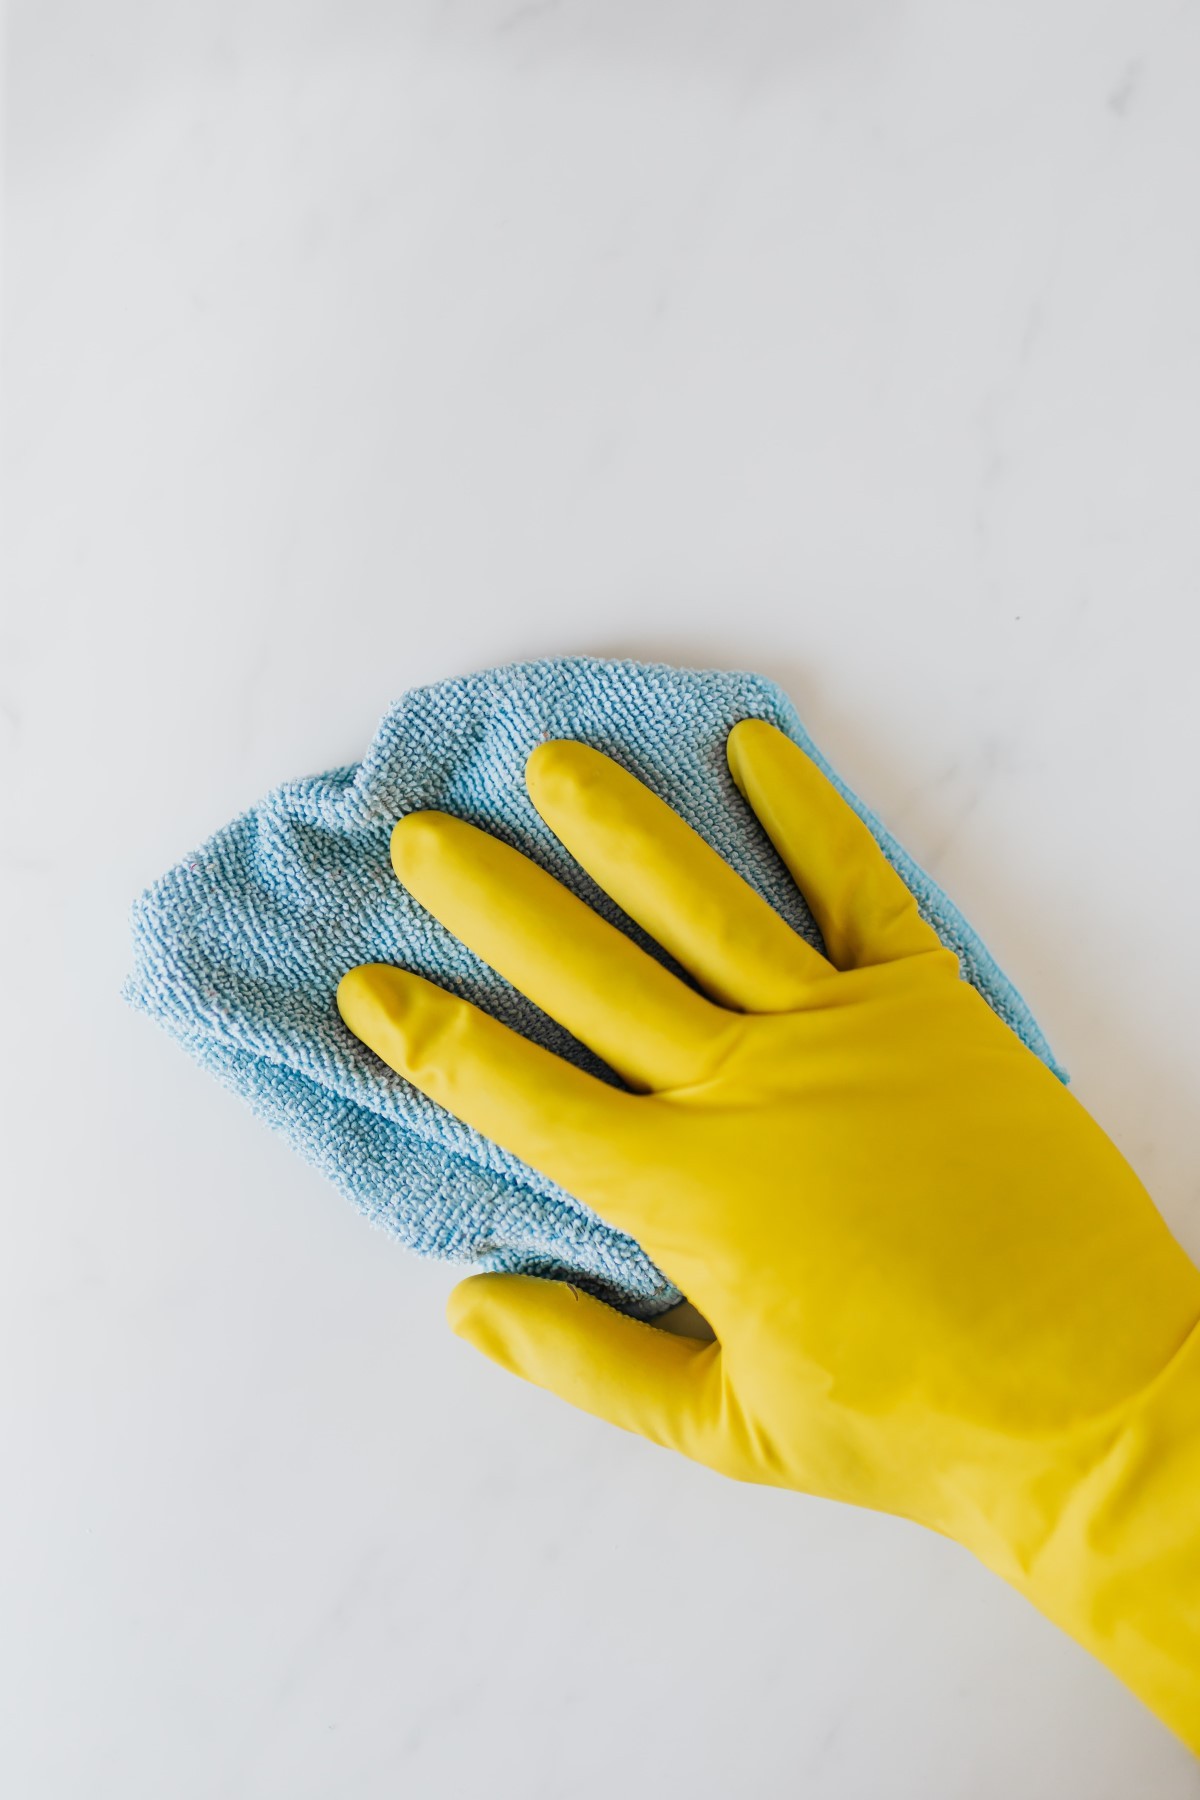 Manter a casa limpa é um dos fatores que ajudam na prevenção de vírus e bactérias  (Foto: Pexels / Karolina Grabowska / CreativeCommons)